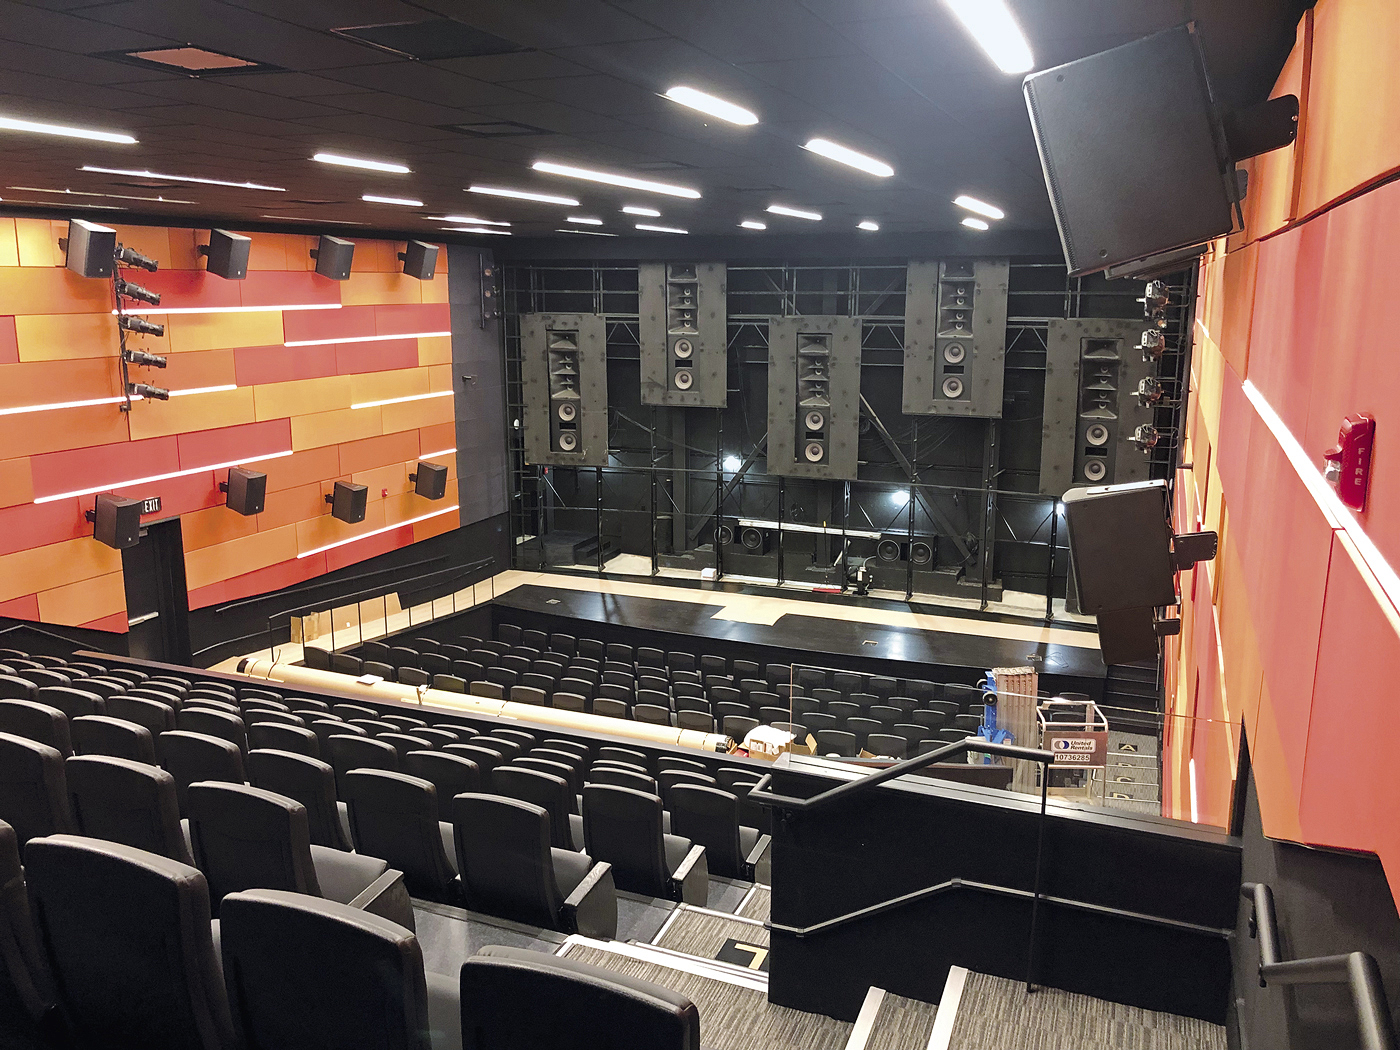 Die AV-Installation wurde so geplant, dass die Projektions- und Lautsprechersysteme des Cinemark Theaters nicht beeinträchtigt werden.